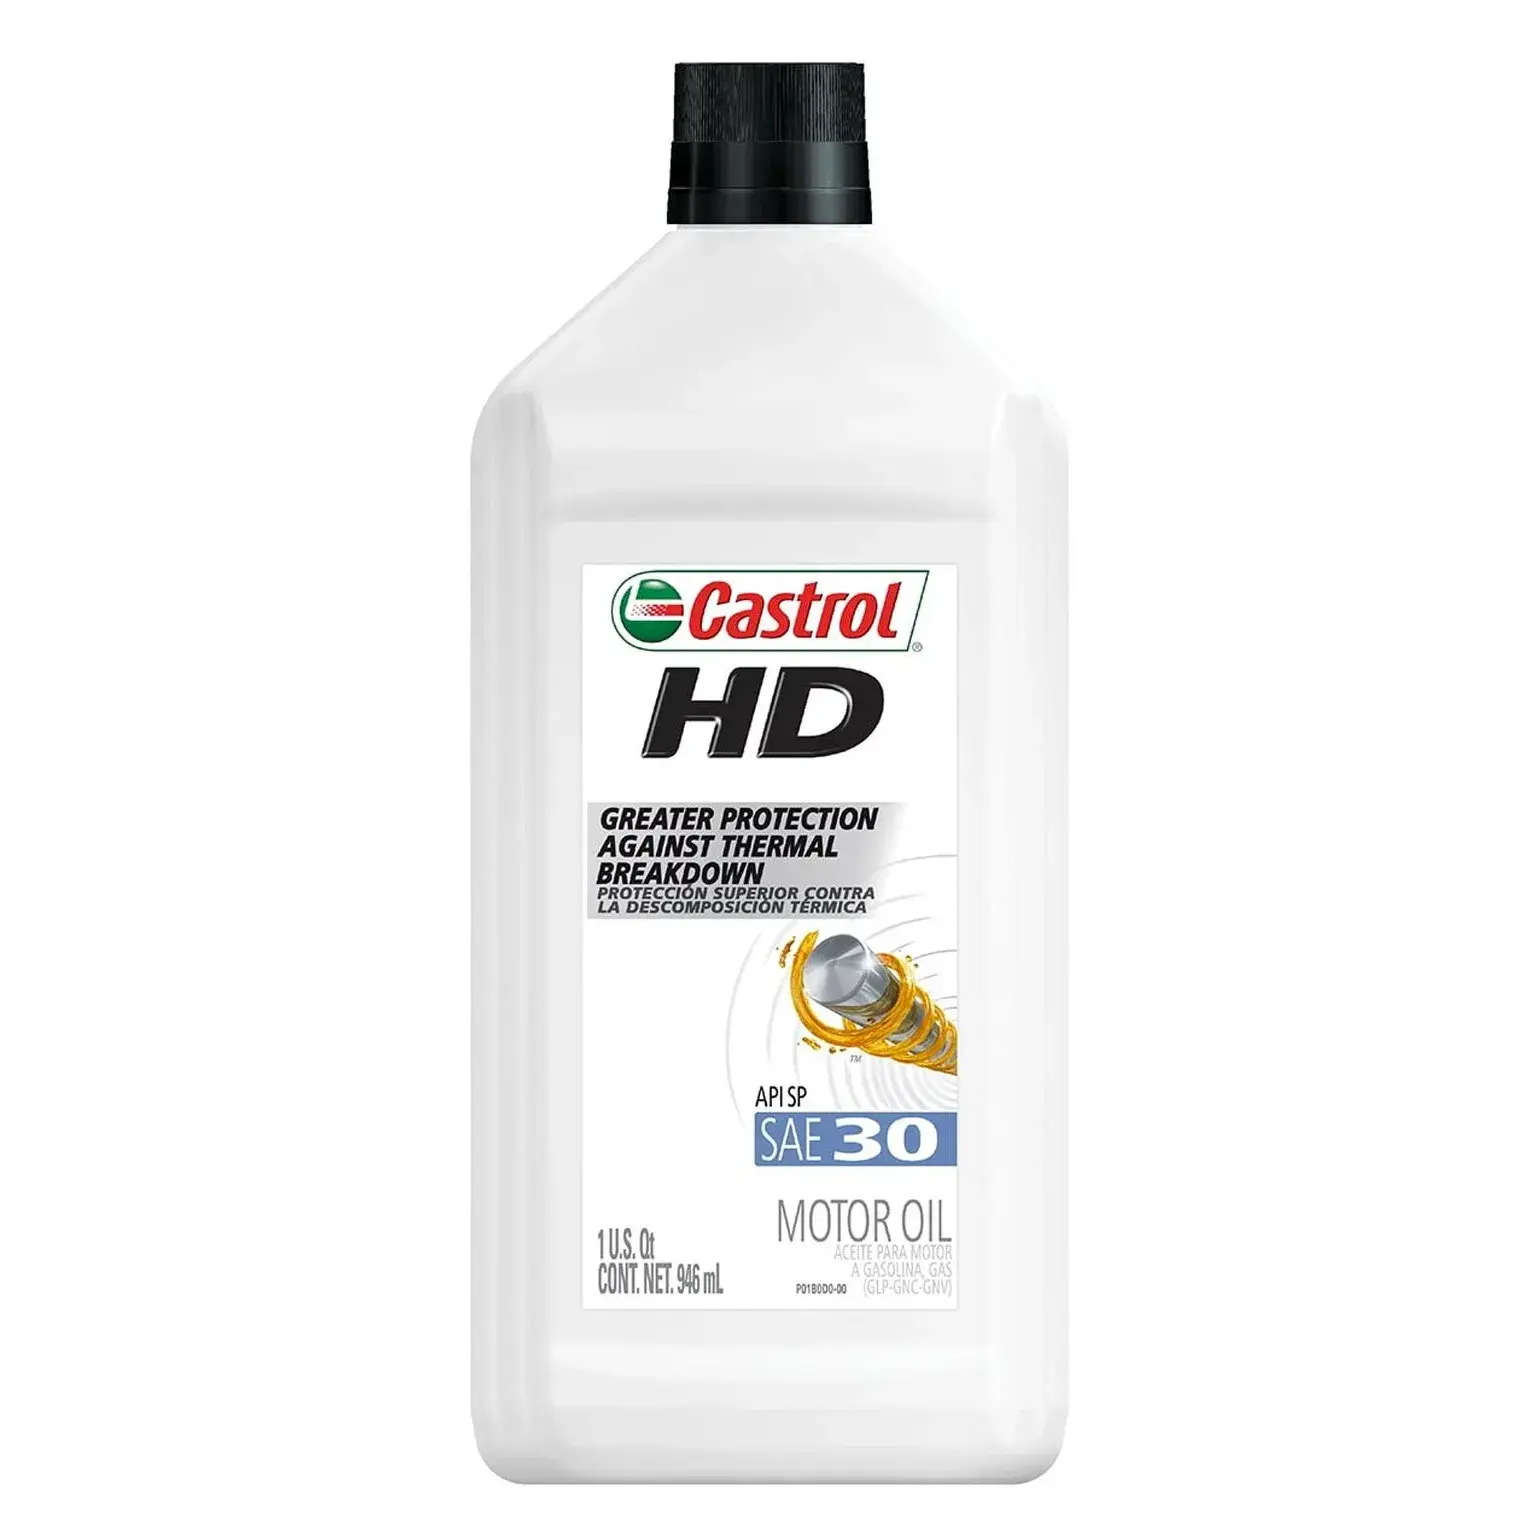 Castrol HD 30 monograde l huile à moteur, 1 quart